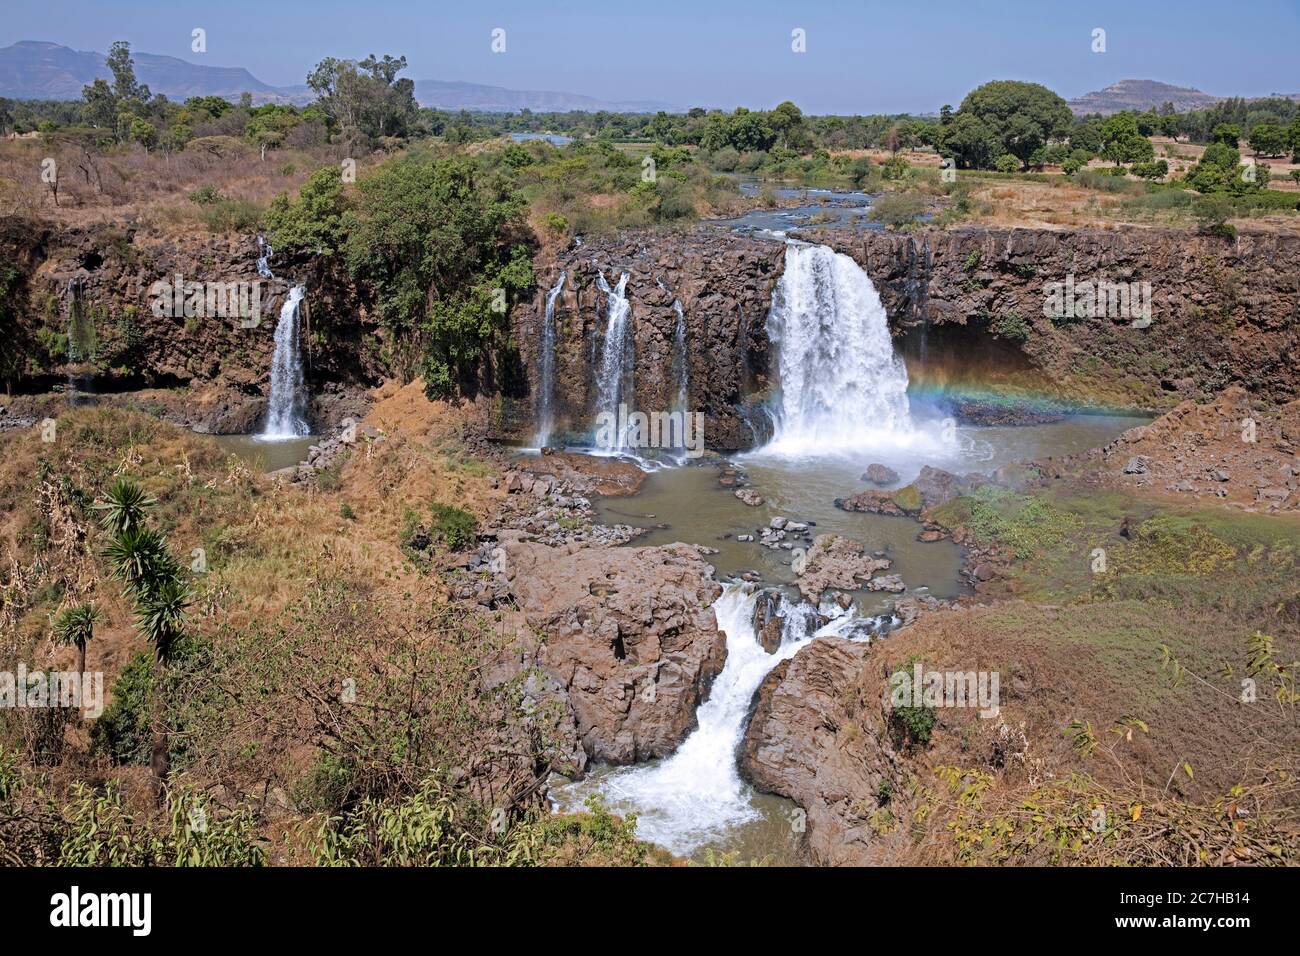 Tis Abay / Blue Nile Falls, cascada en el río Nilo Azul cerca de Bahir dar durante la temporada seca, Región de Amhara, Etiopía, África Foto de stock